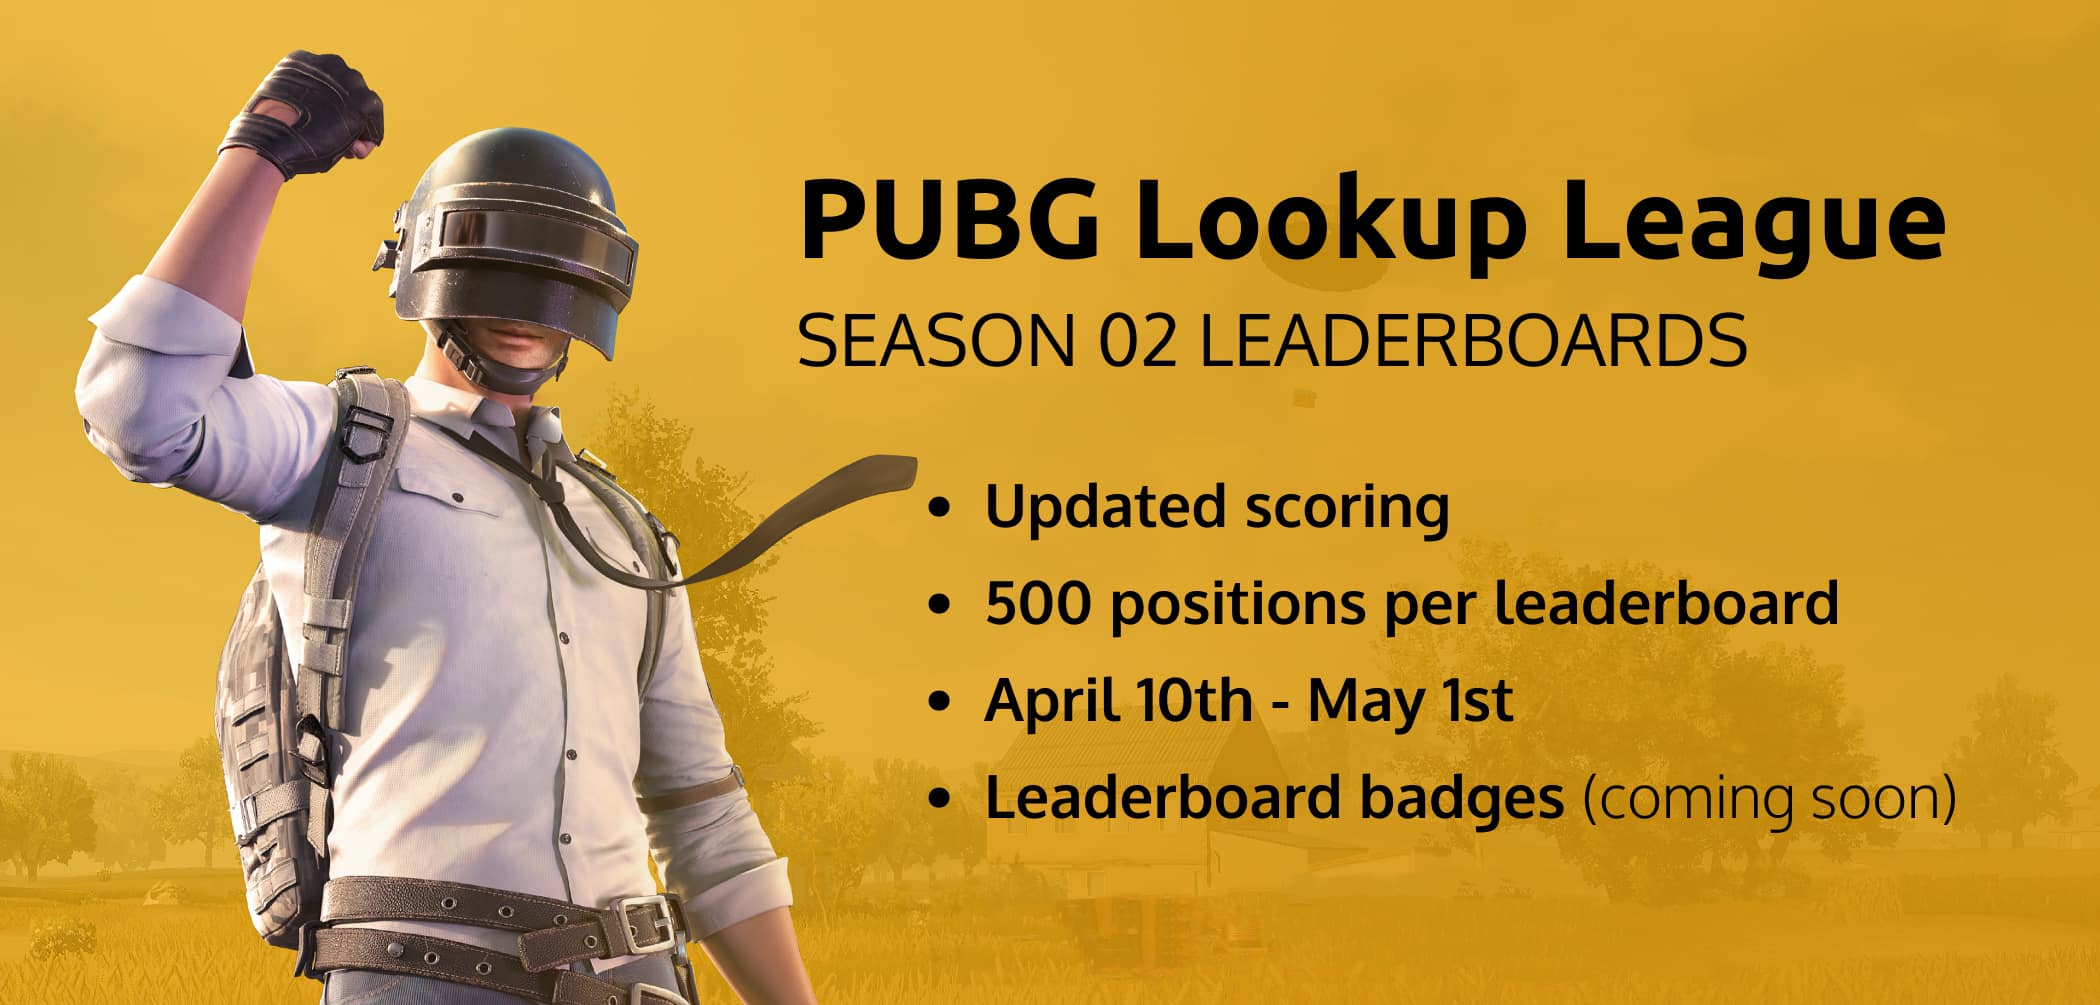 PUBG Lookup League - Season 02